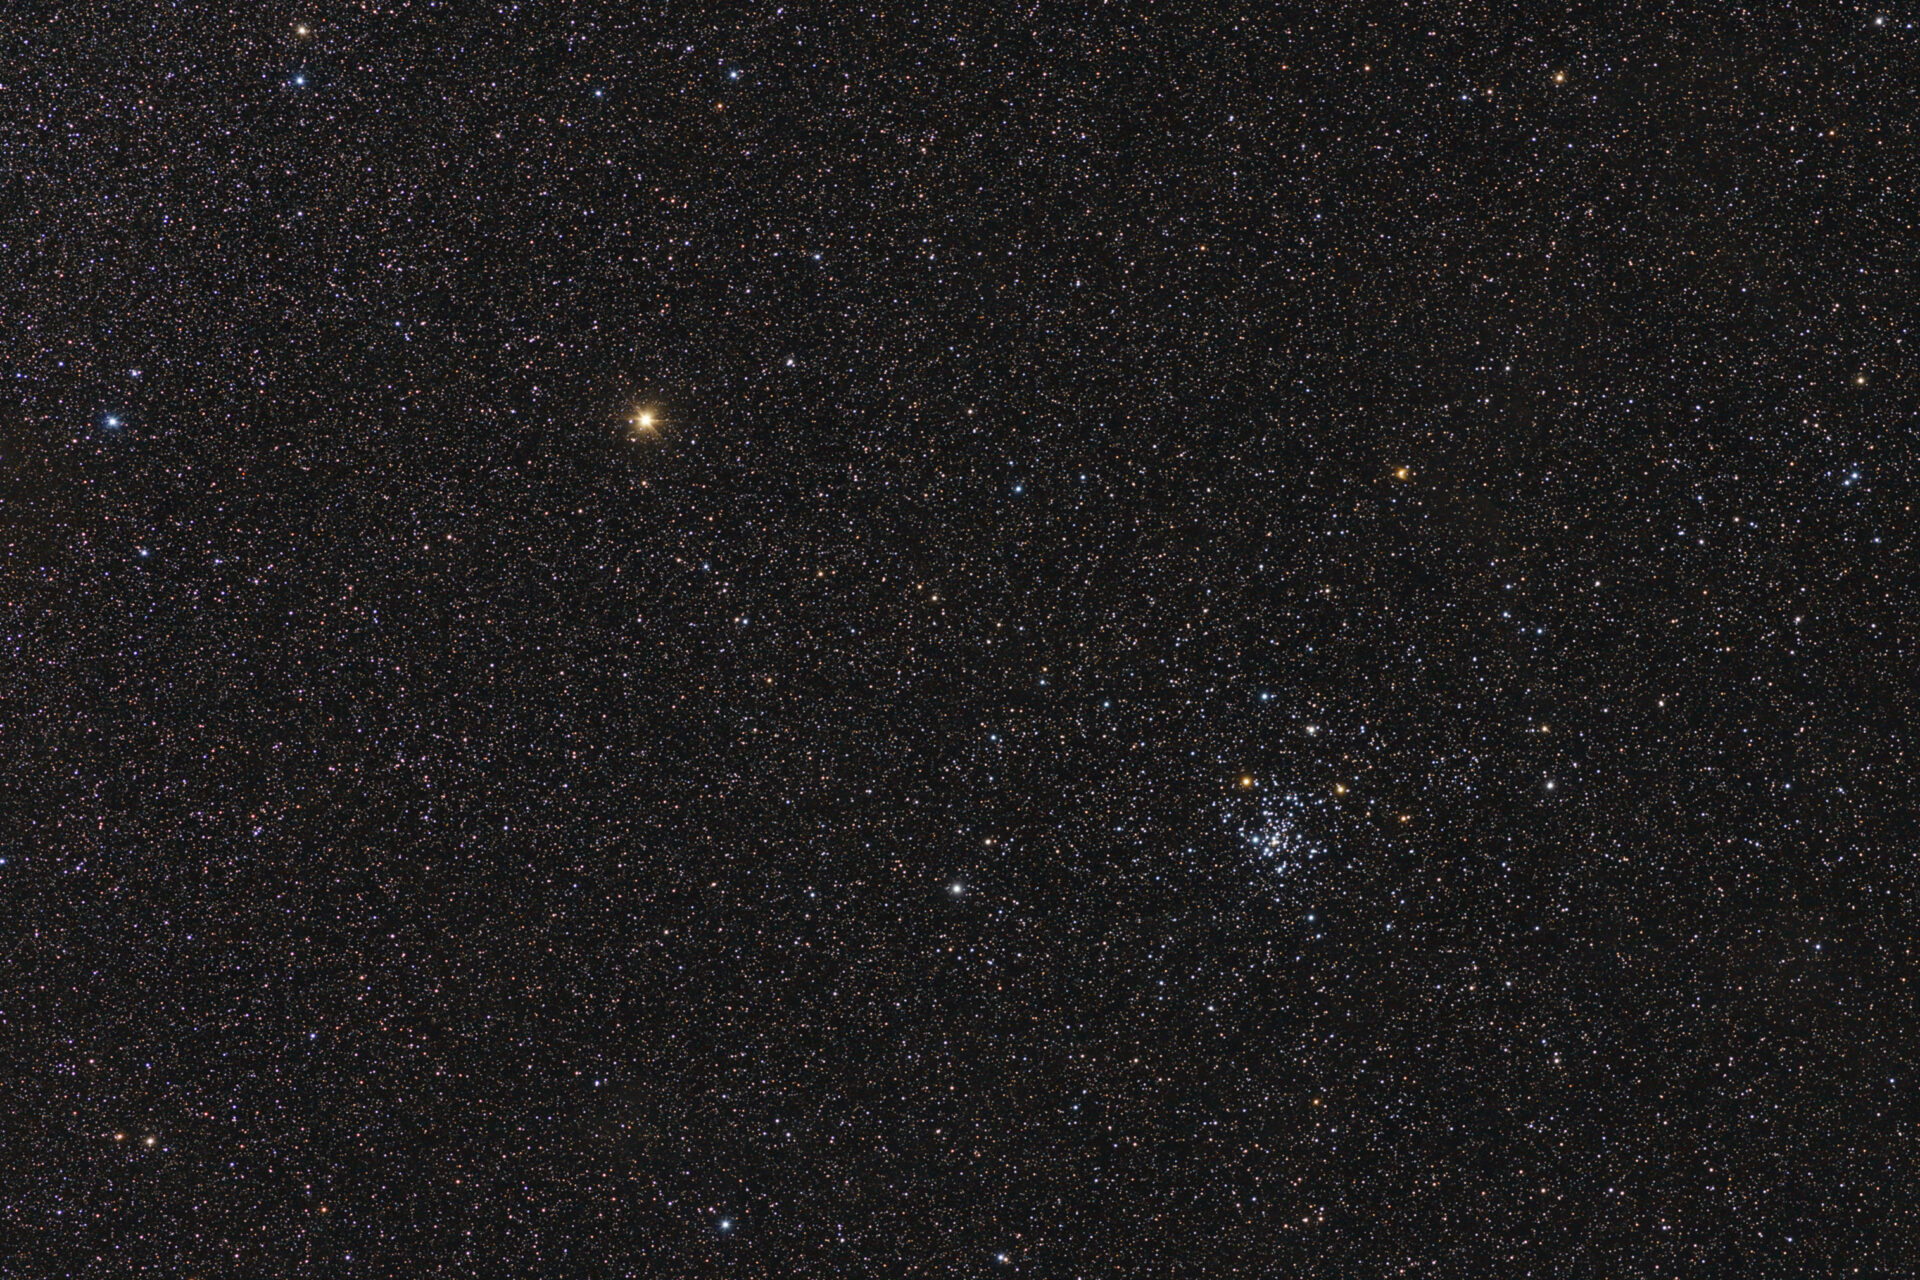 NGC 2516